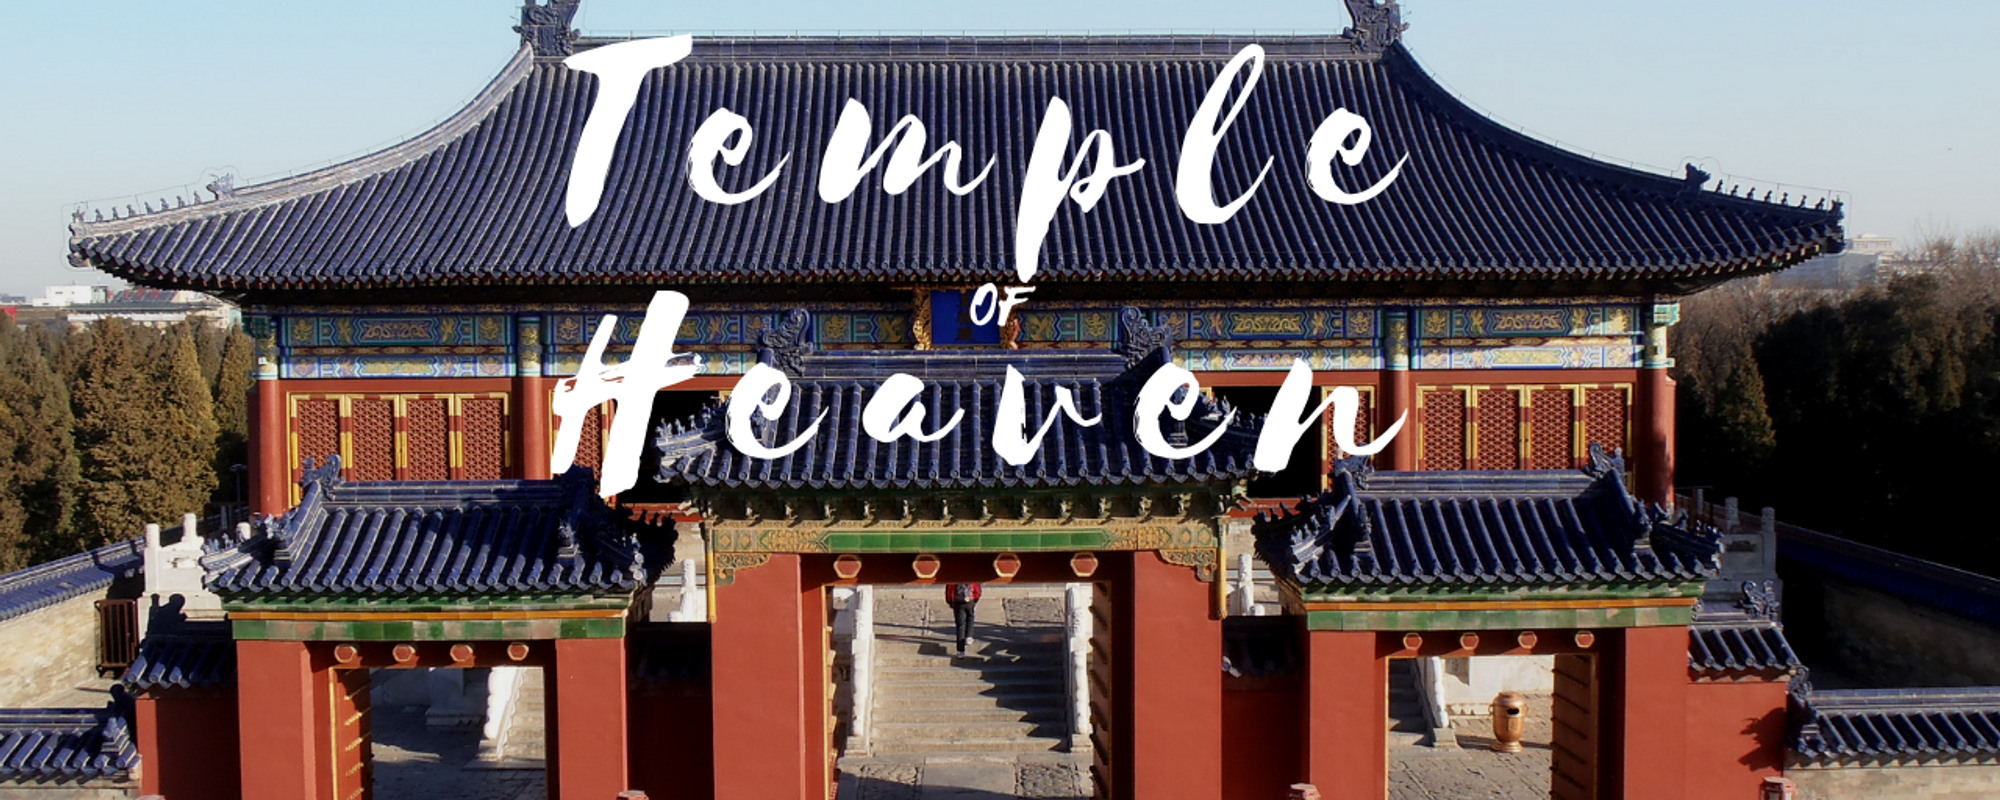 Temple of Heaven – Beijing